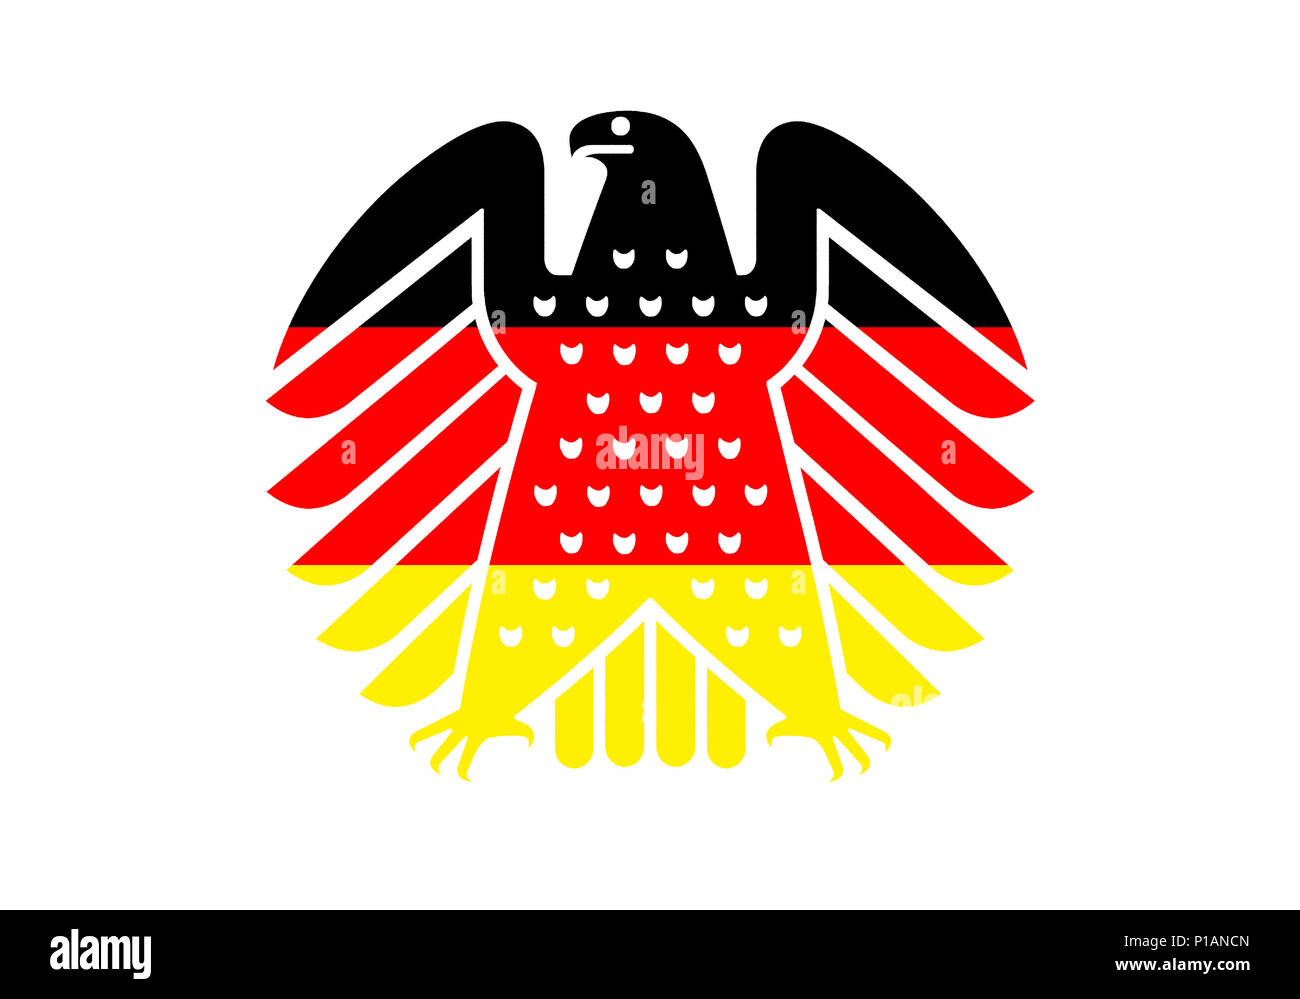 Neue bundesadler in den Farben schwarz - rot - Gold, das Wappentier der Bundesrepublik Deutschland,, Neuer Bundesadler in den Farben schwarz-rot-g Stockfoto